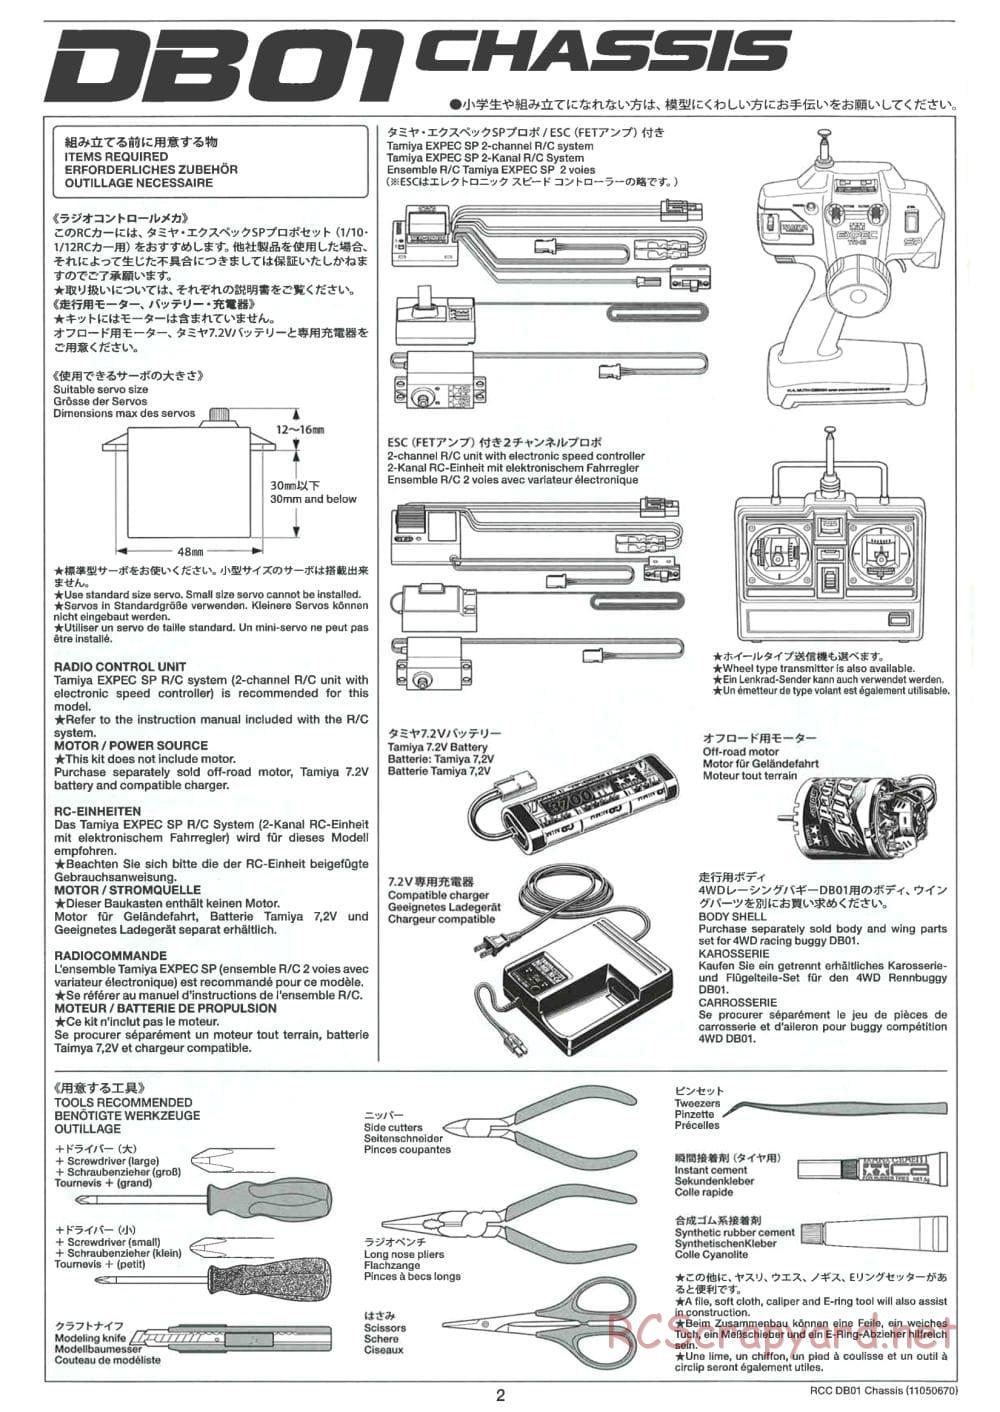 Tamiya - DB-01 Chassis - Manual - Page 2